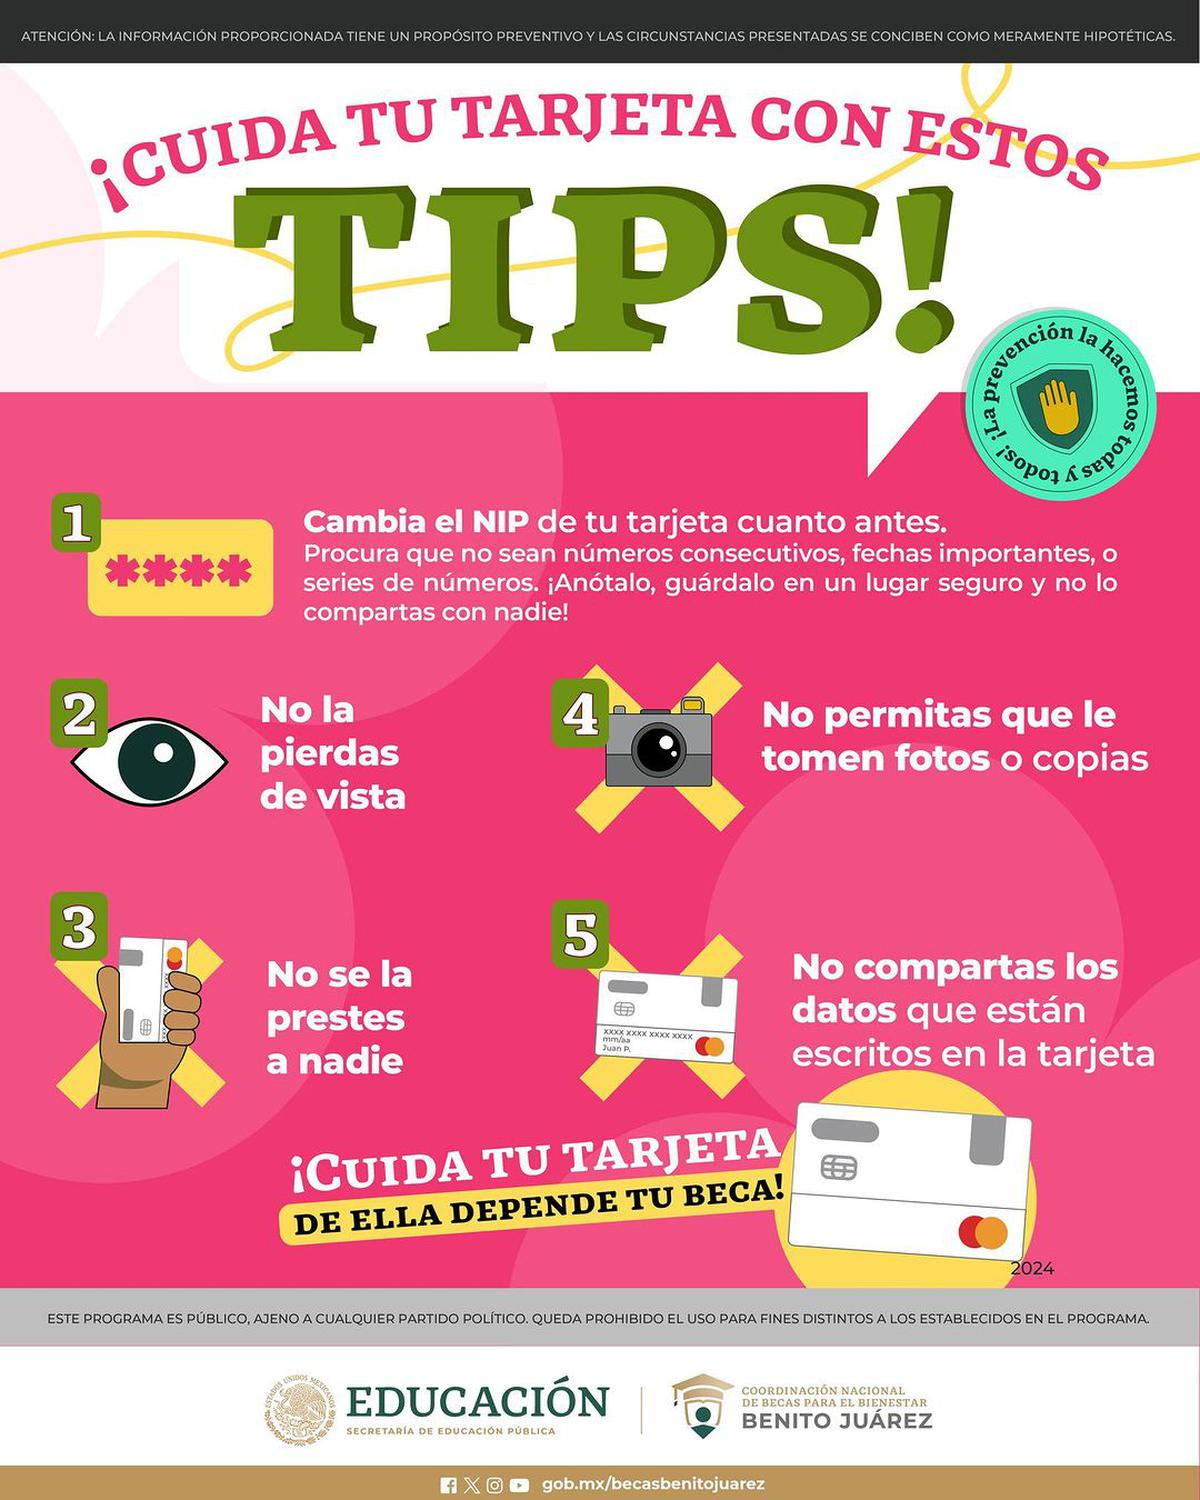 Evita actos fraudulentos | Sigue estos consejos y protegete de las estafas y el mal uso de tu información. Fuente: Instagram @becasbenitojuarezoficial